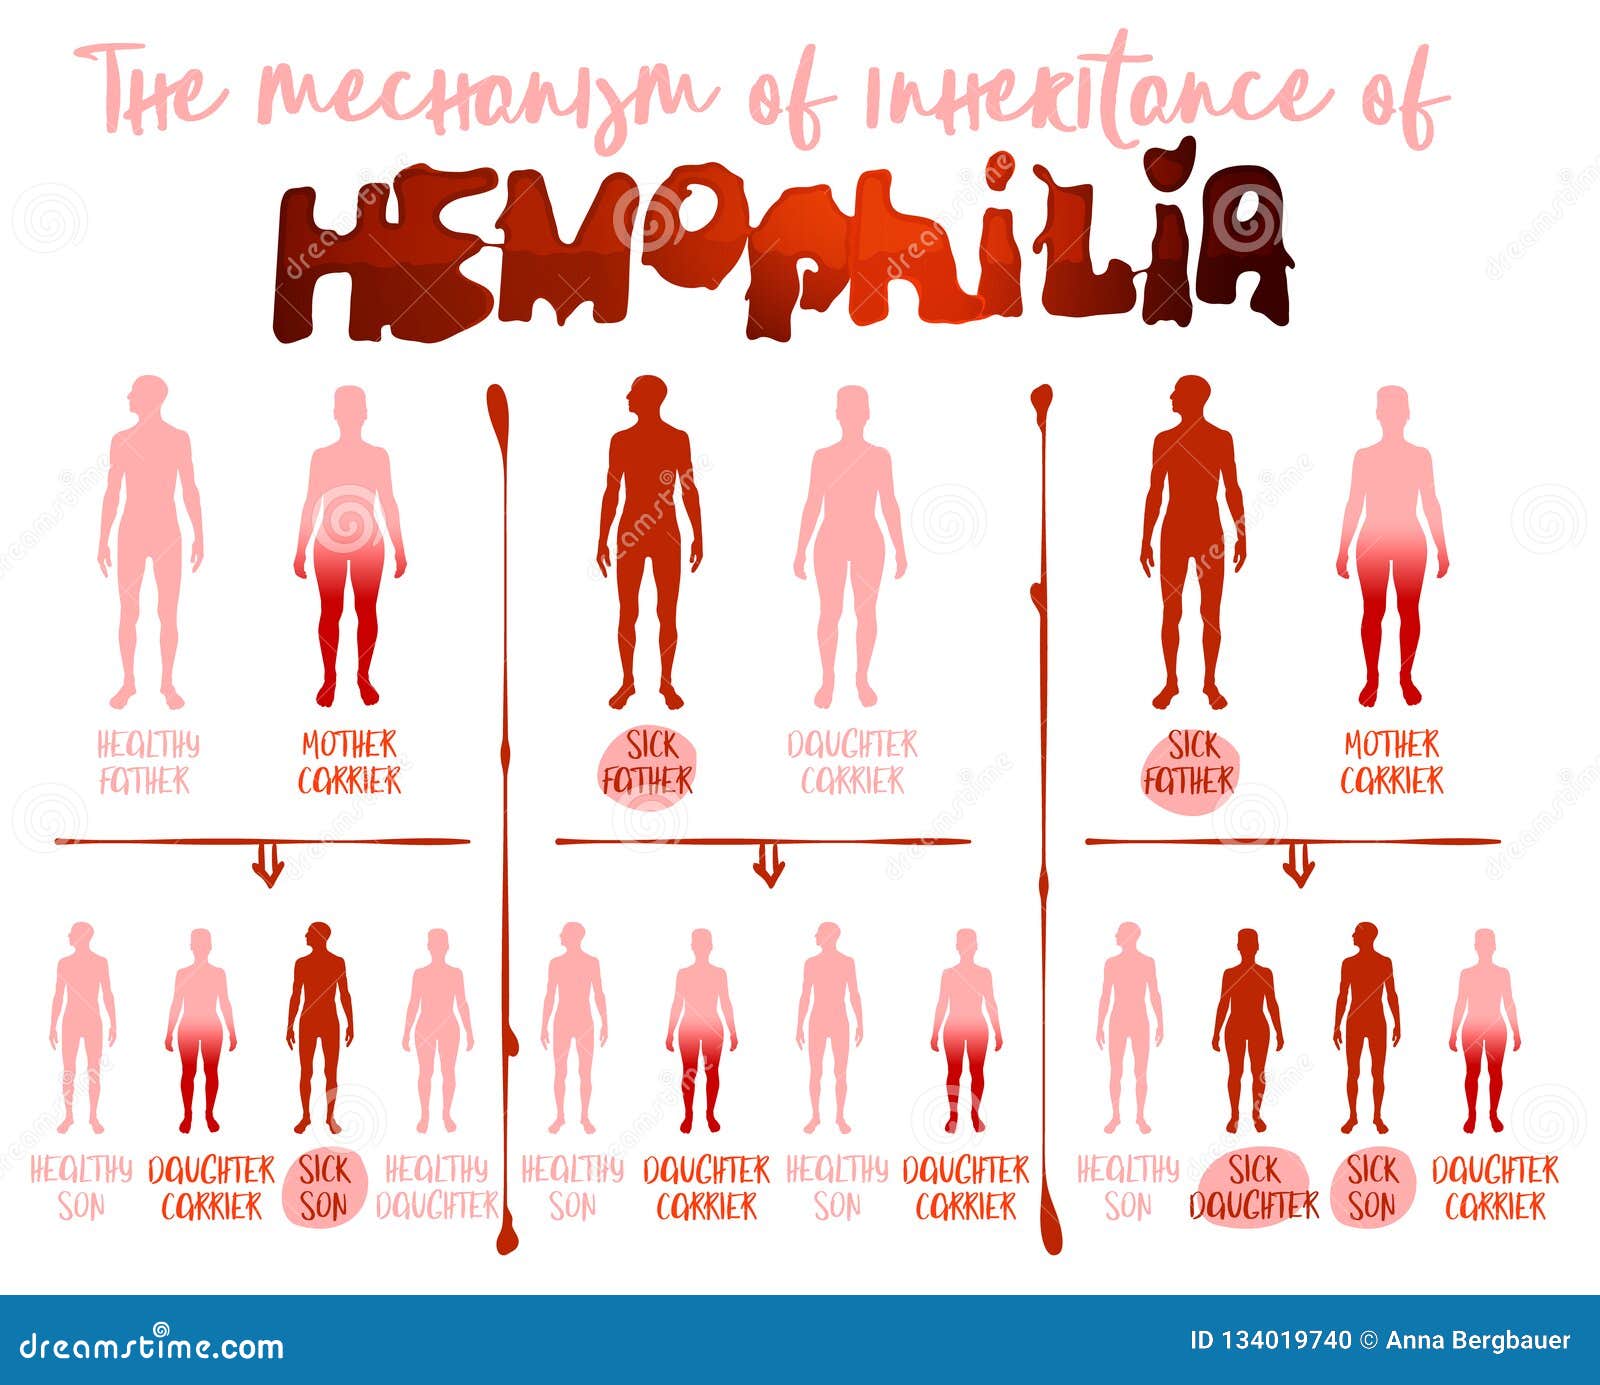 Гематофилия. Инфографика гемофилия. Группы крови инфографика. Кровь инфографика. Кровь в человеке инфографика.